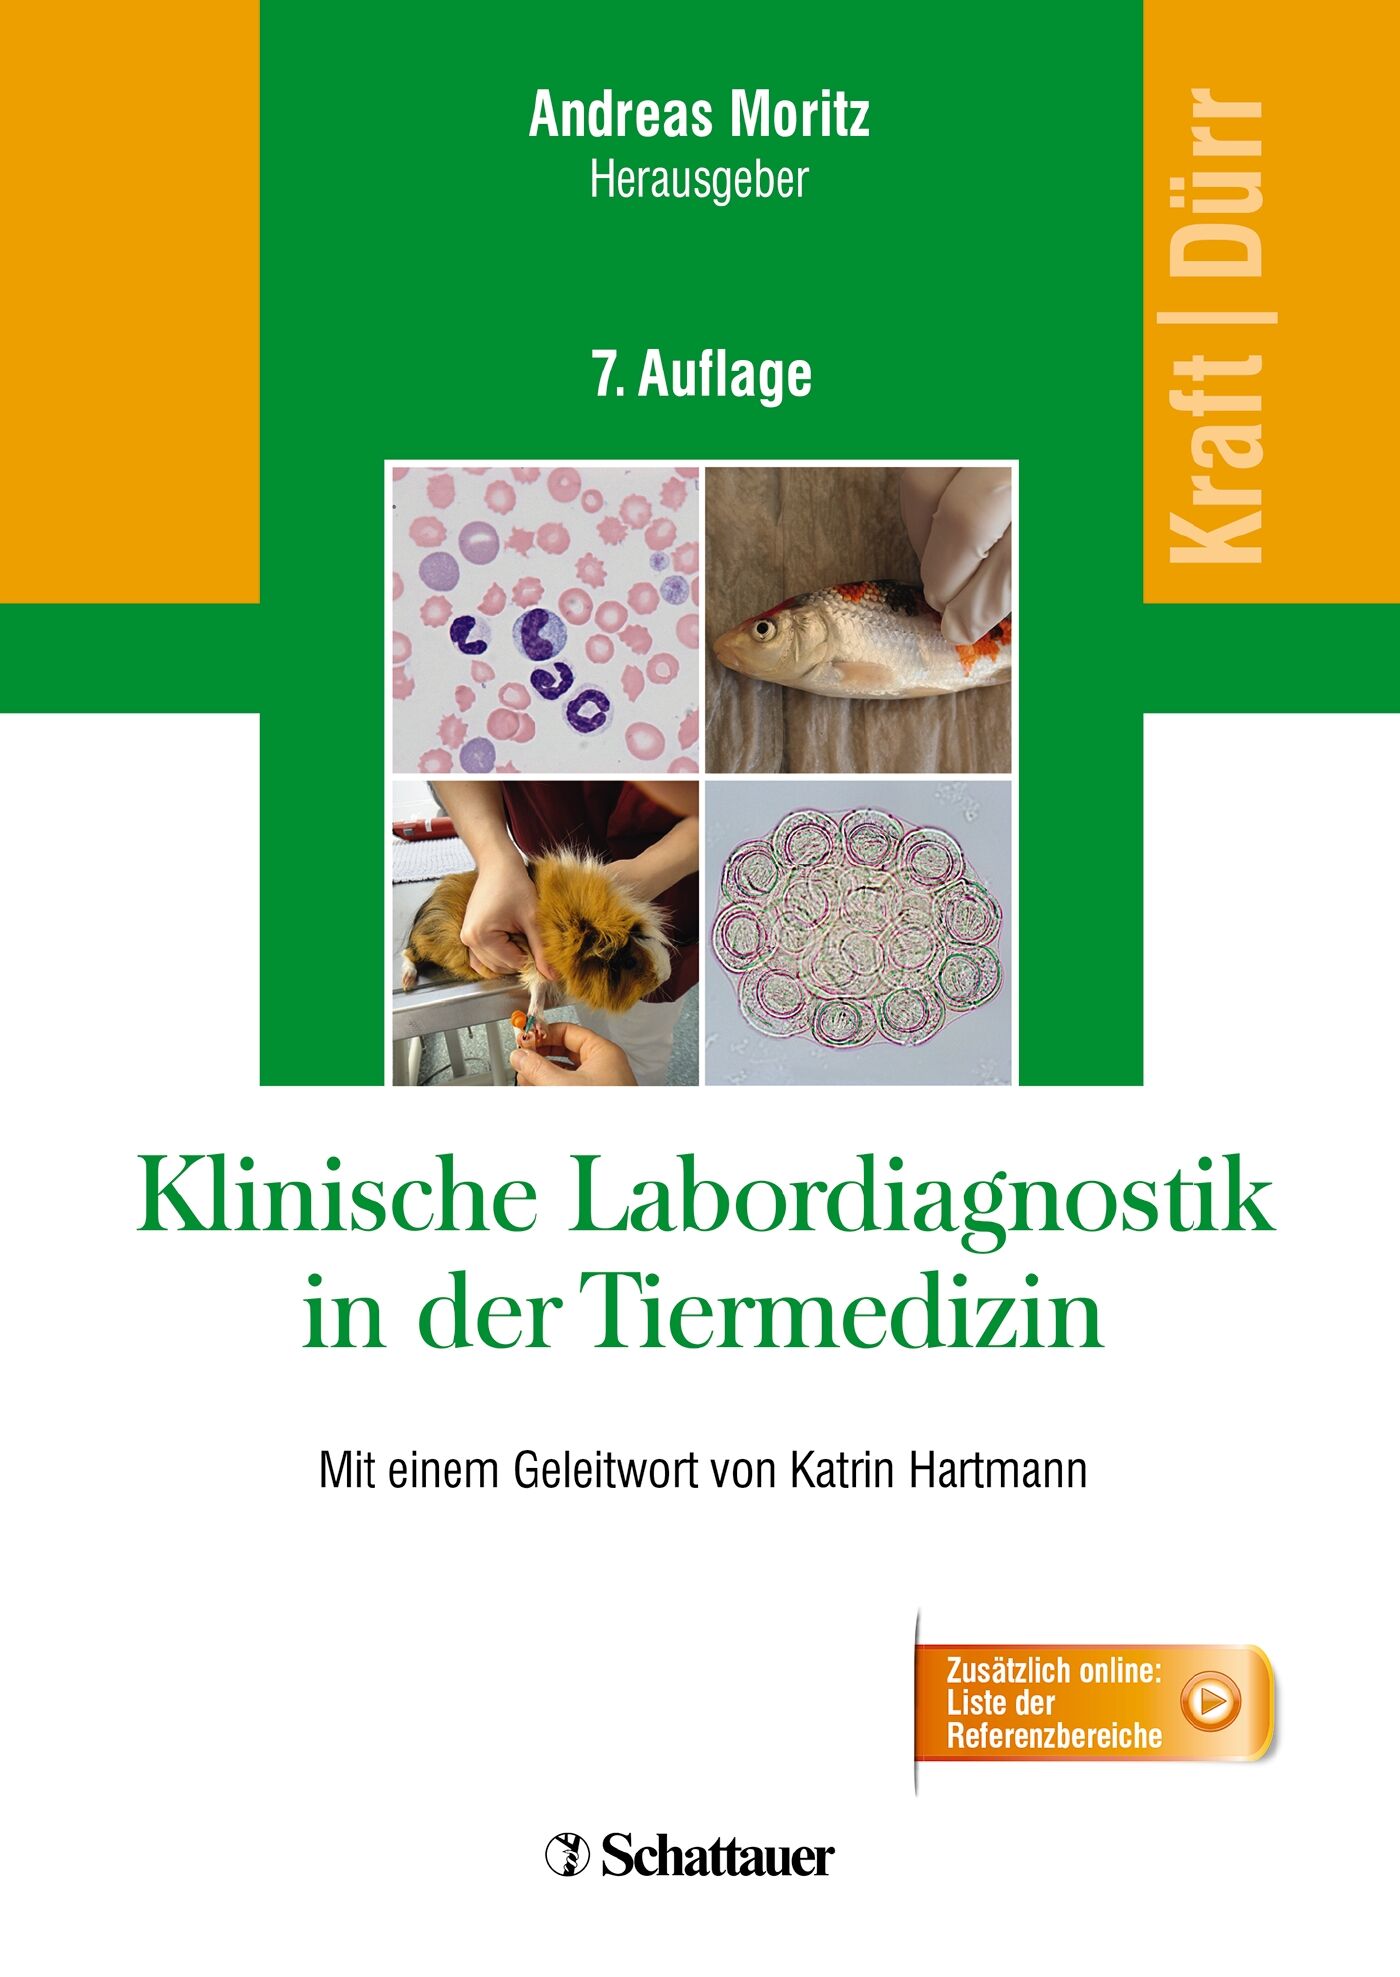 Klinische Labordiagnostik in der Tiermedizin, 9783794527373